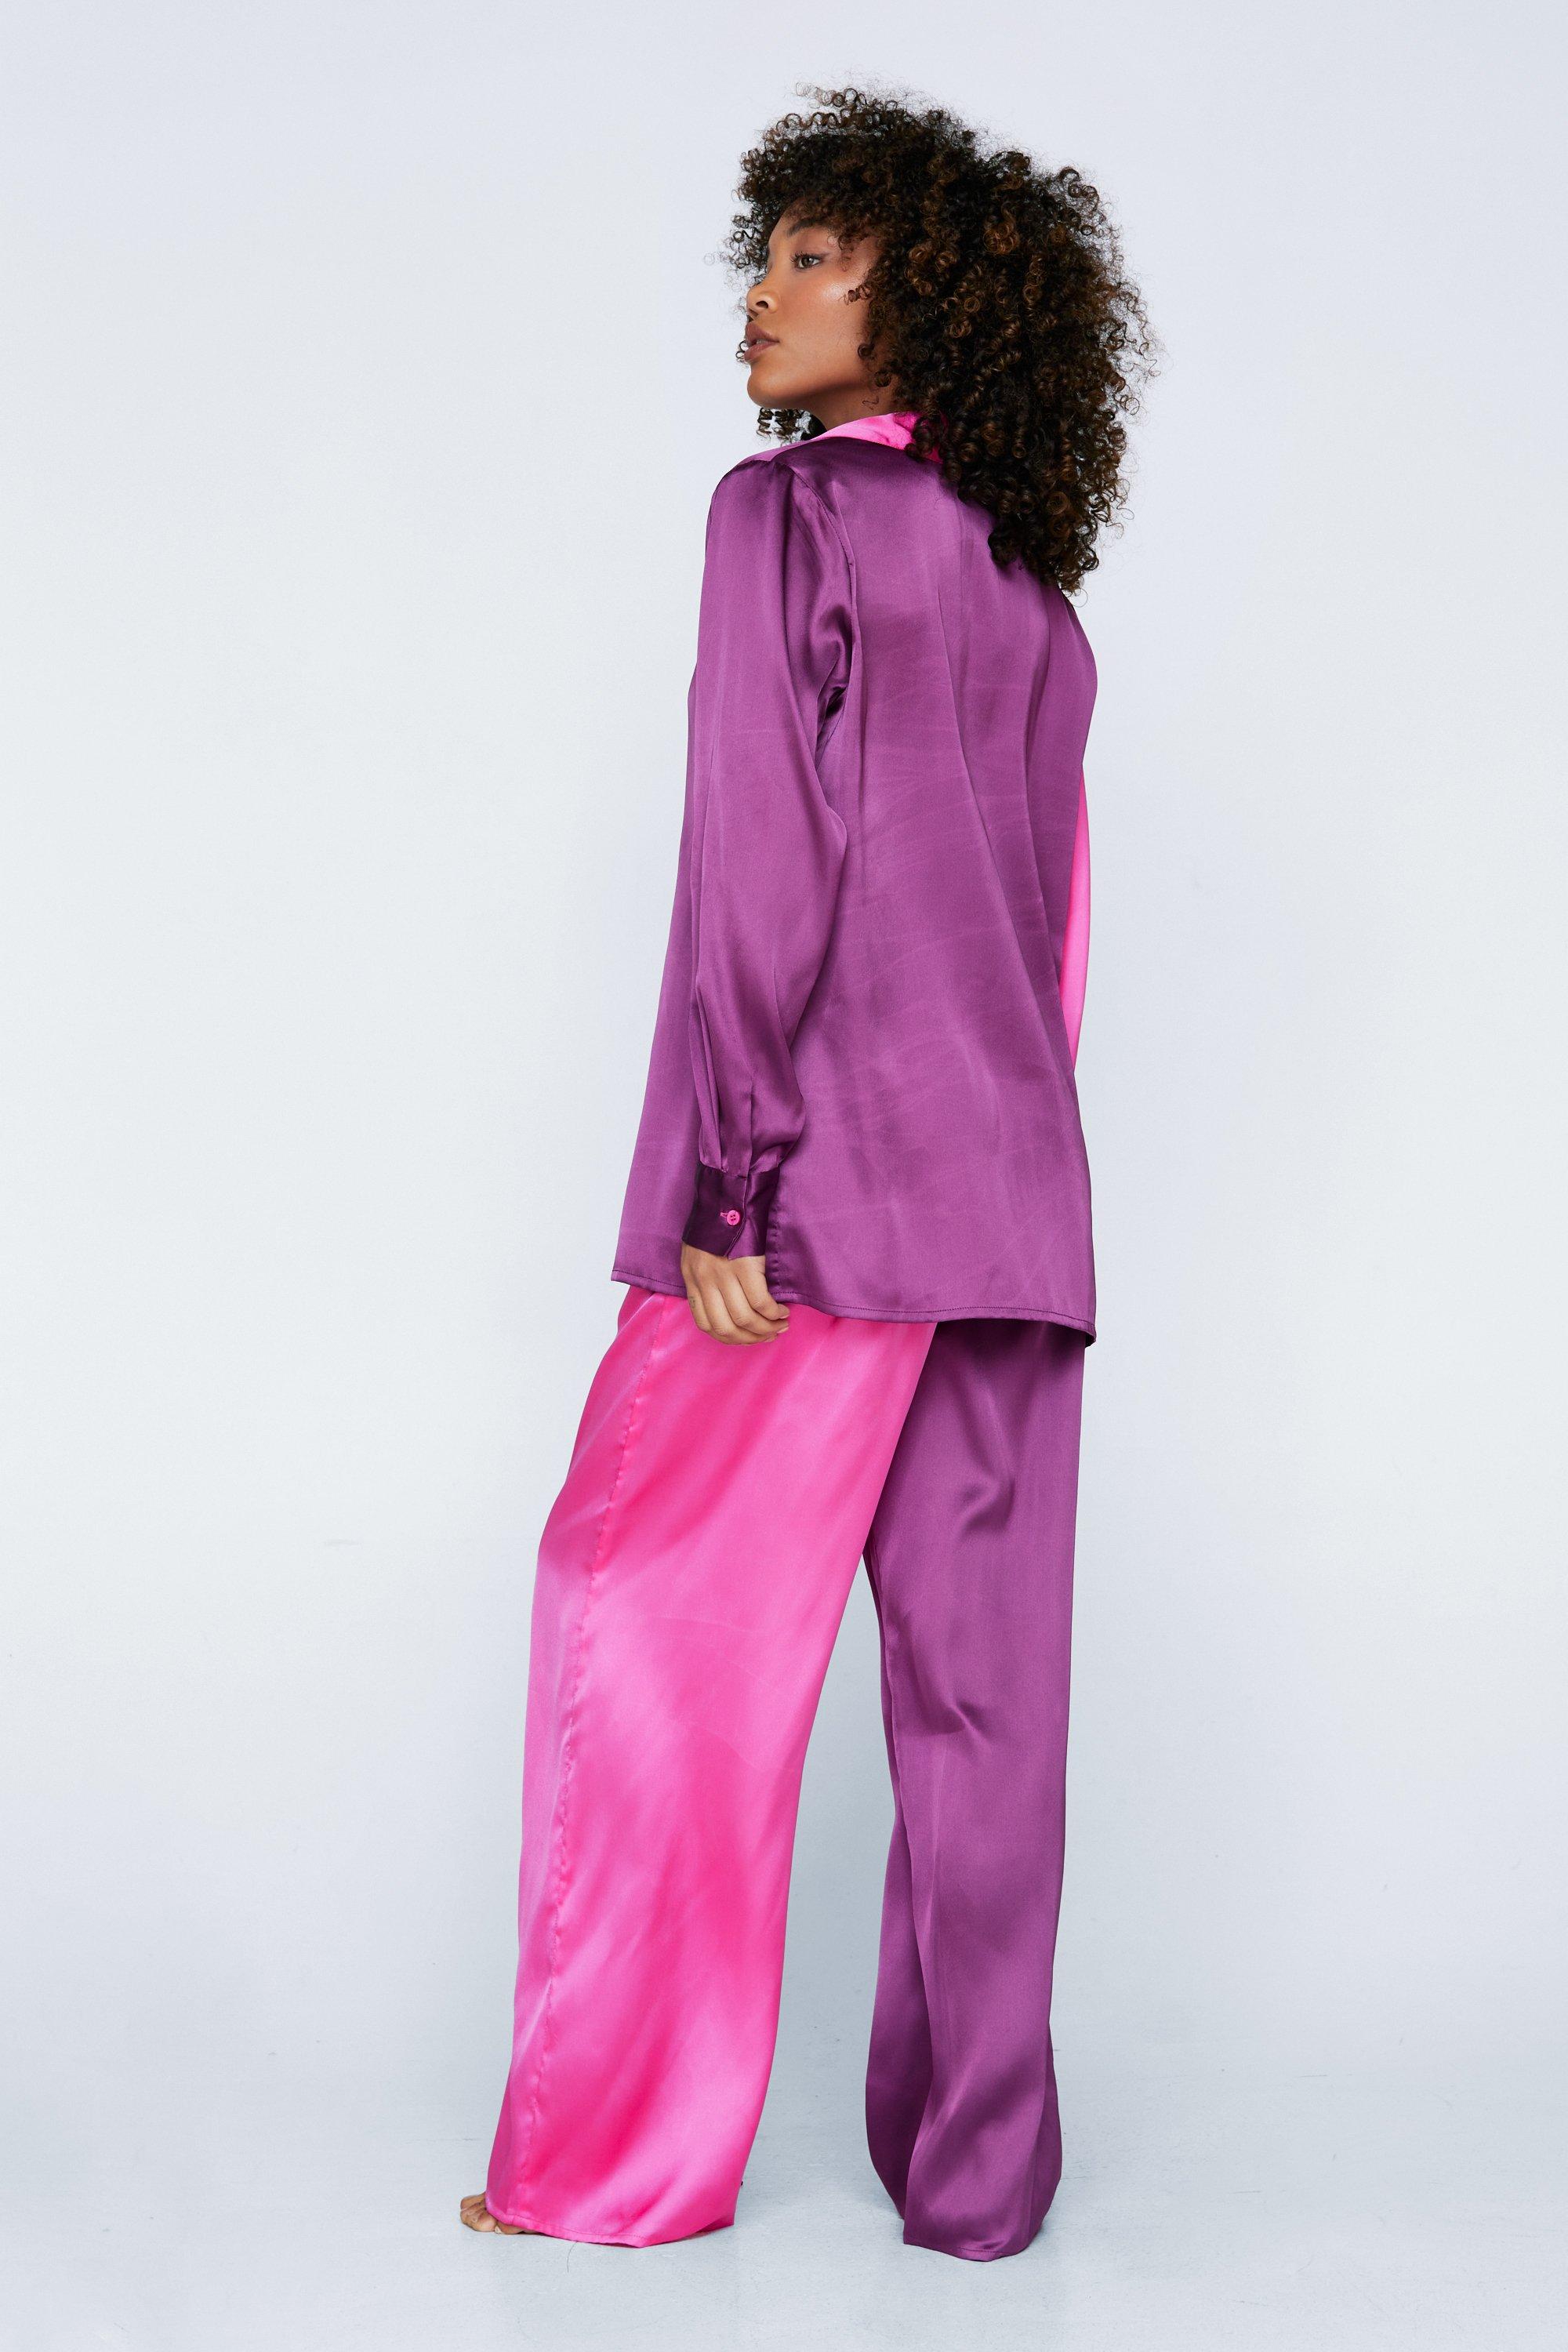 Satin Colorblock Pajama Shirt and Pants Set